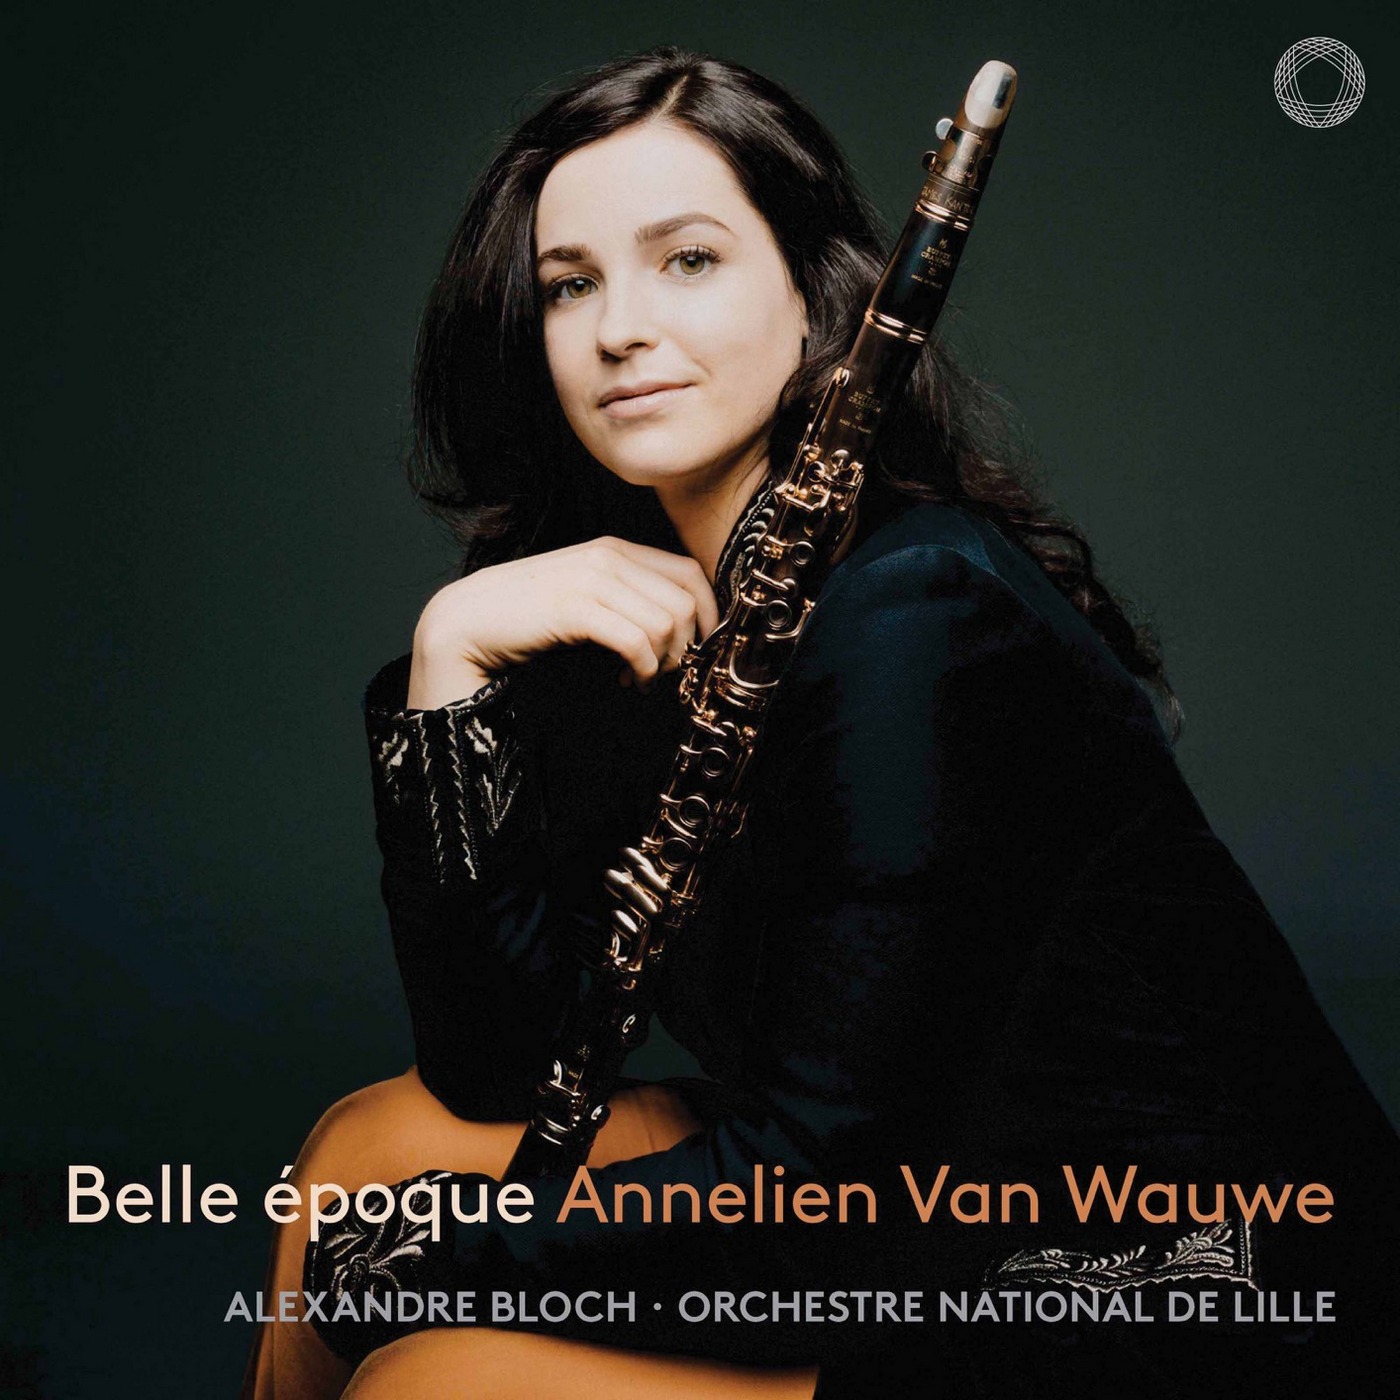 Alexandre Bloch, Orchestre National De Lille, Annelien van Wauwe – Belle Epoque (2019) [FLAC 24bit/96kHz]